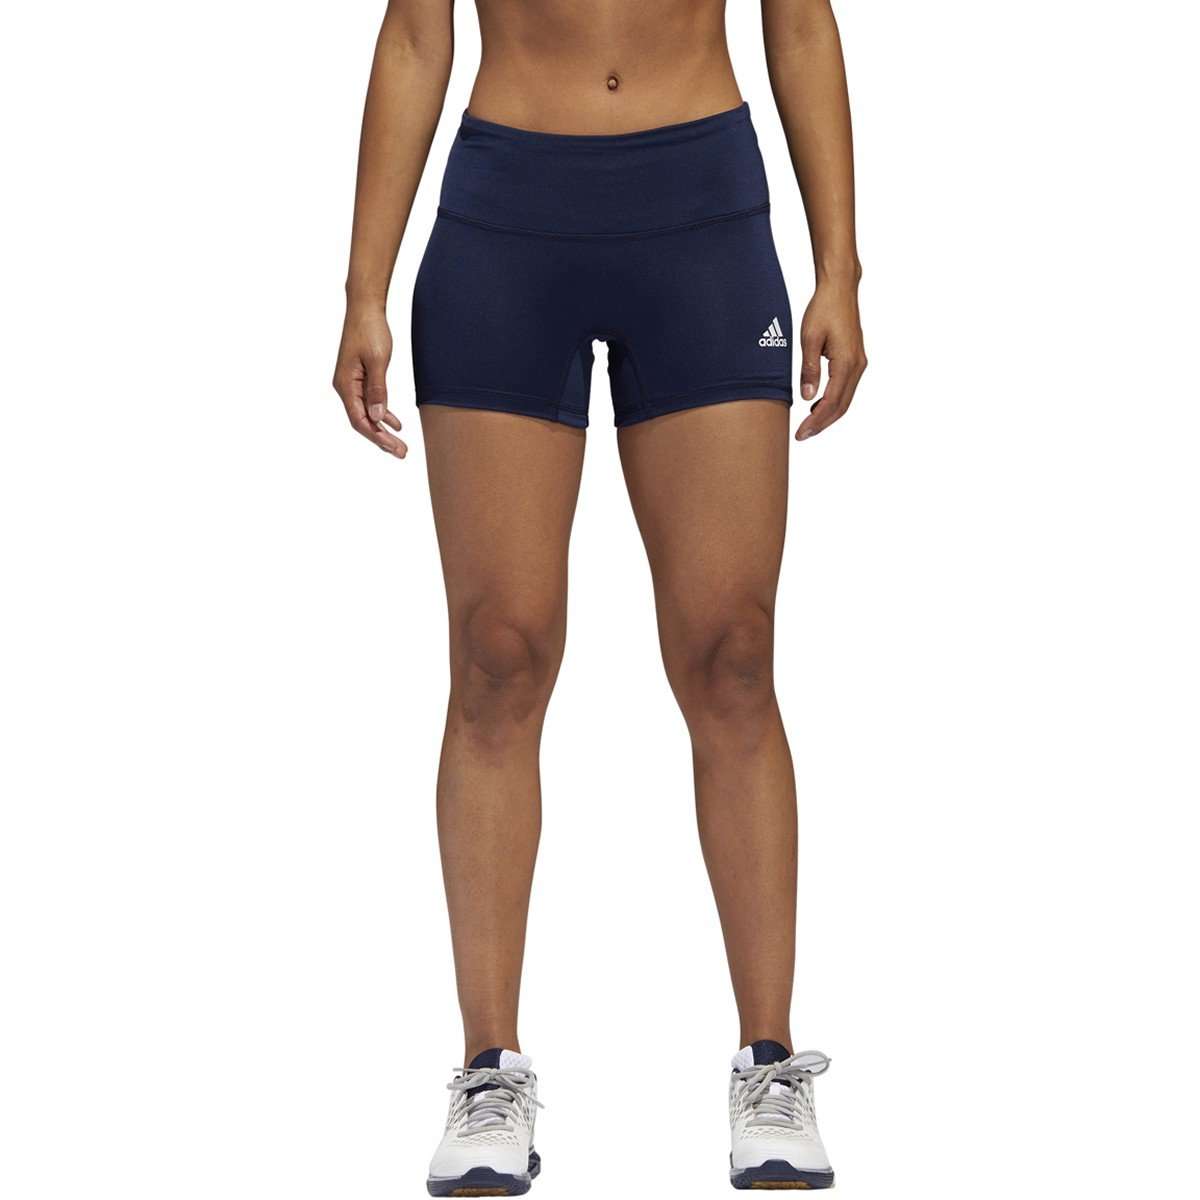 Шорты для волейбола. Adidas Climalite Techfit шорты. Волейбольные шорты Energy. Спандекс шорты adidas. Волейбольный женские шорты Nike.